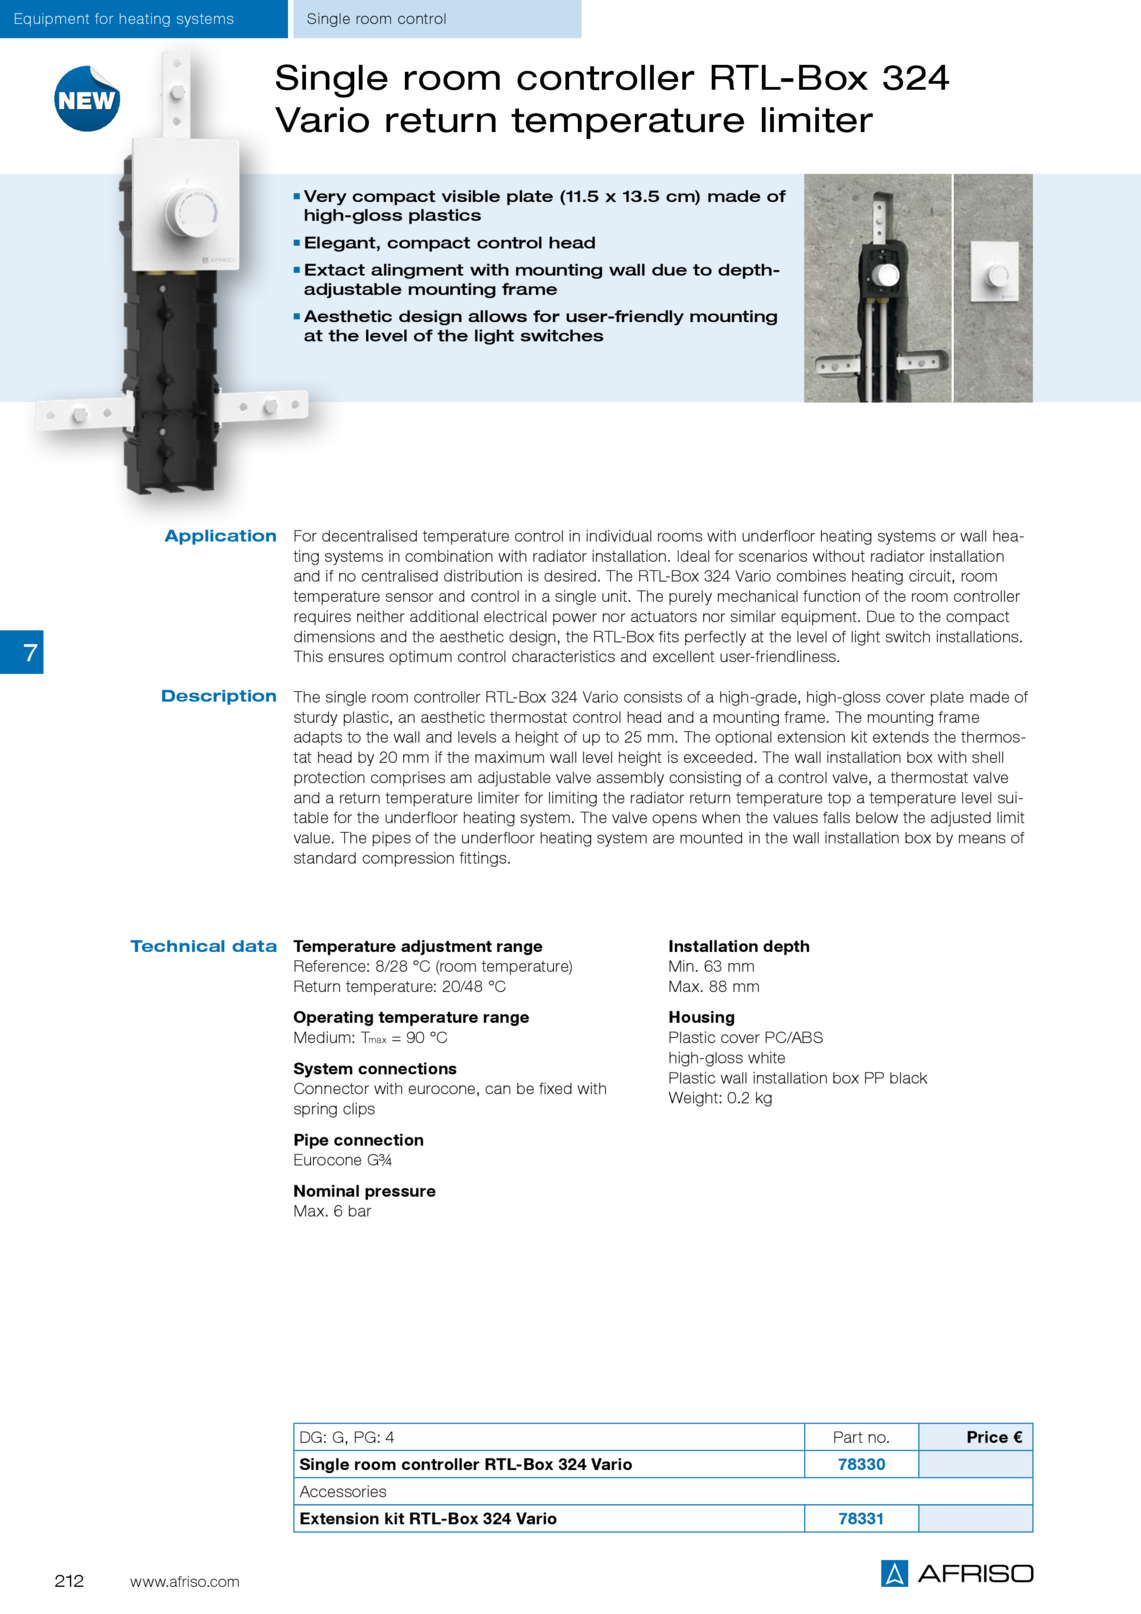 Afriso单人间控制器RTL盒324 VARIO与回水温度限制器